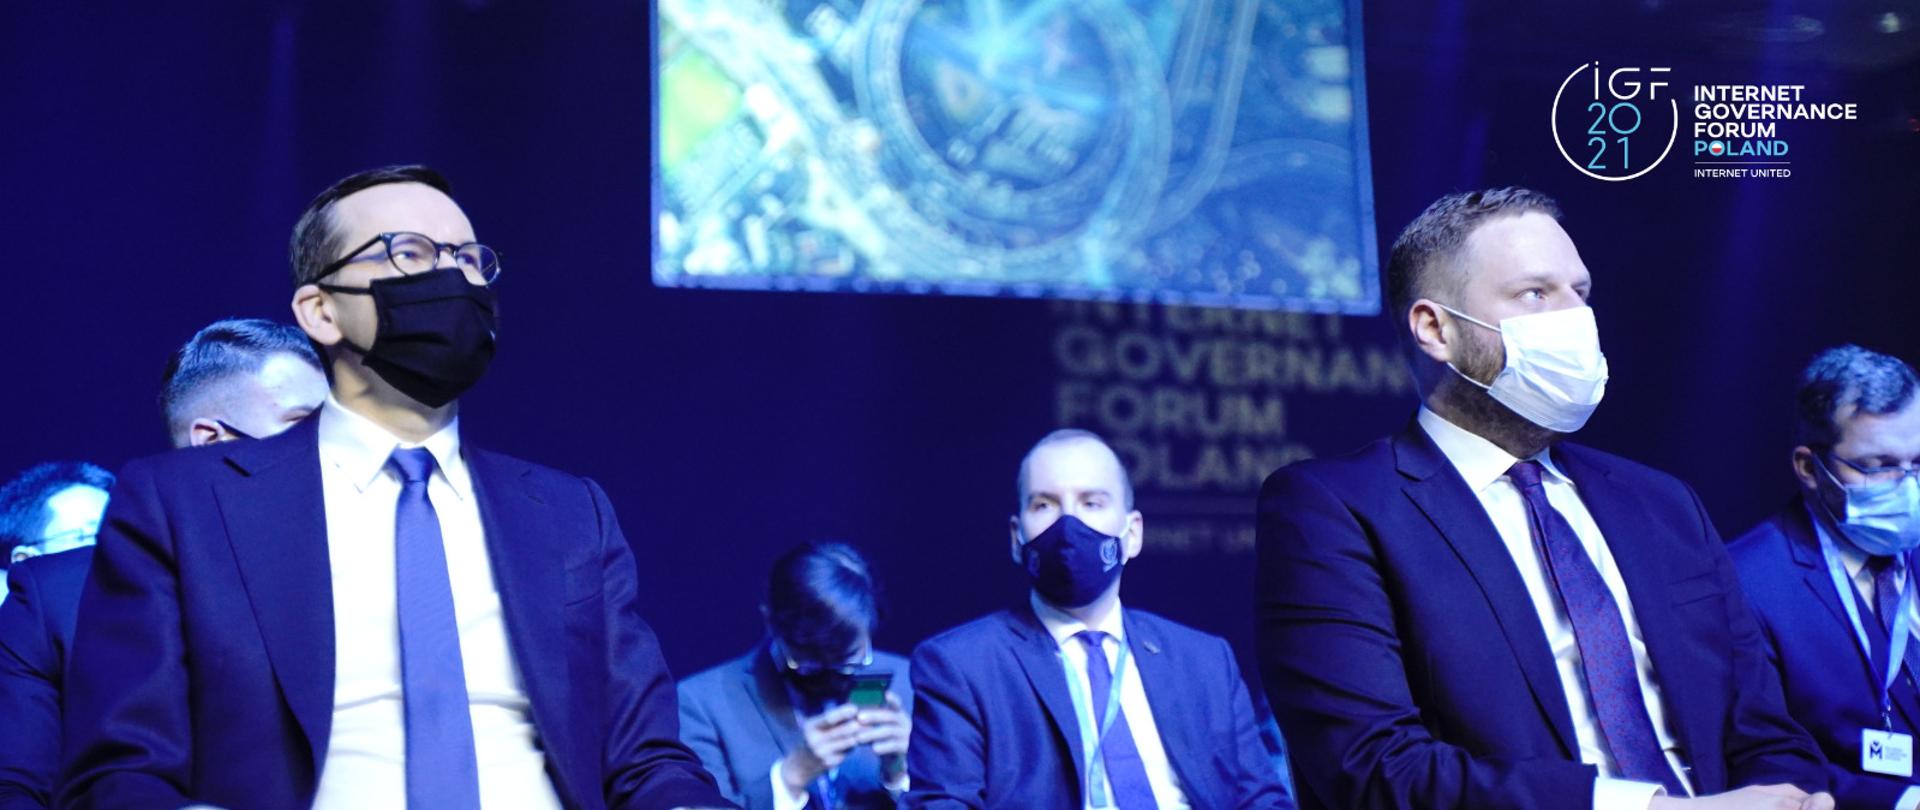 Premier Mateusz Morawiecki oraz ministrowie Janusz Cieszyński i Adam Andruszkiewicz podczas ceremonii otwarcia Szczytu Cyfrowego ONZ - IGF 2021.